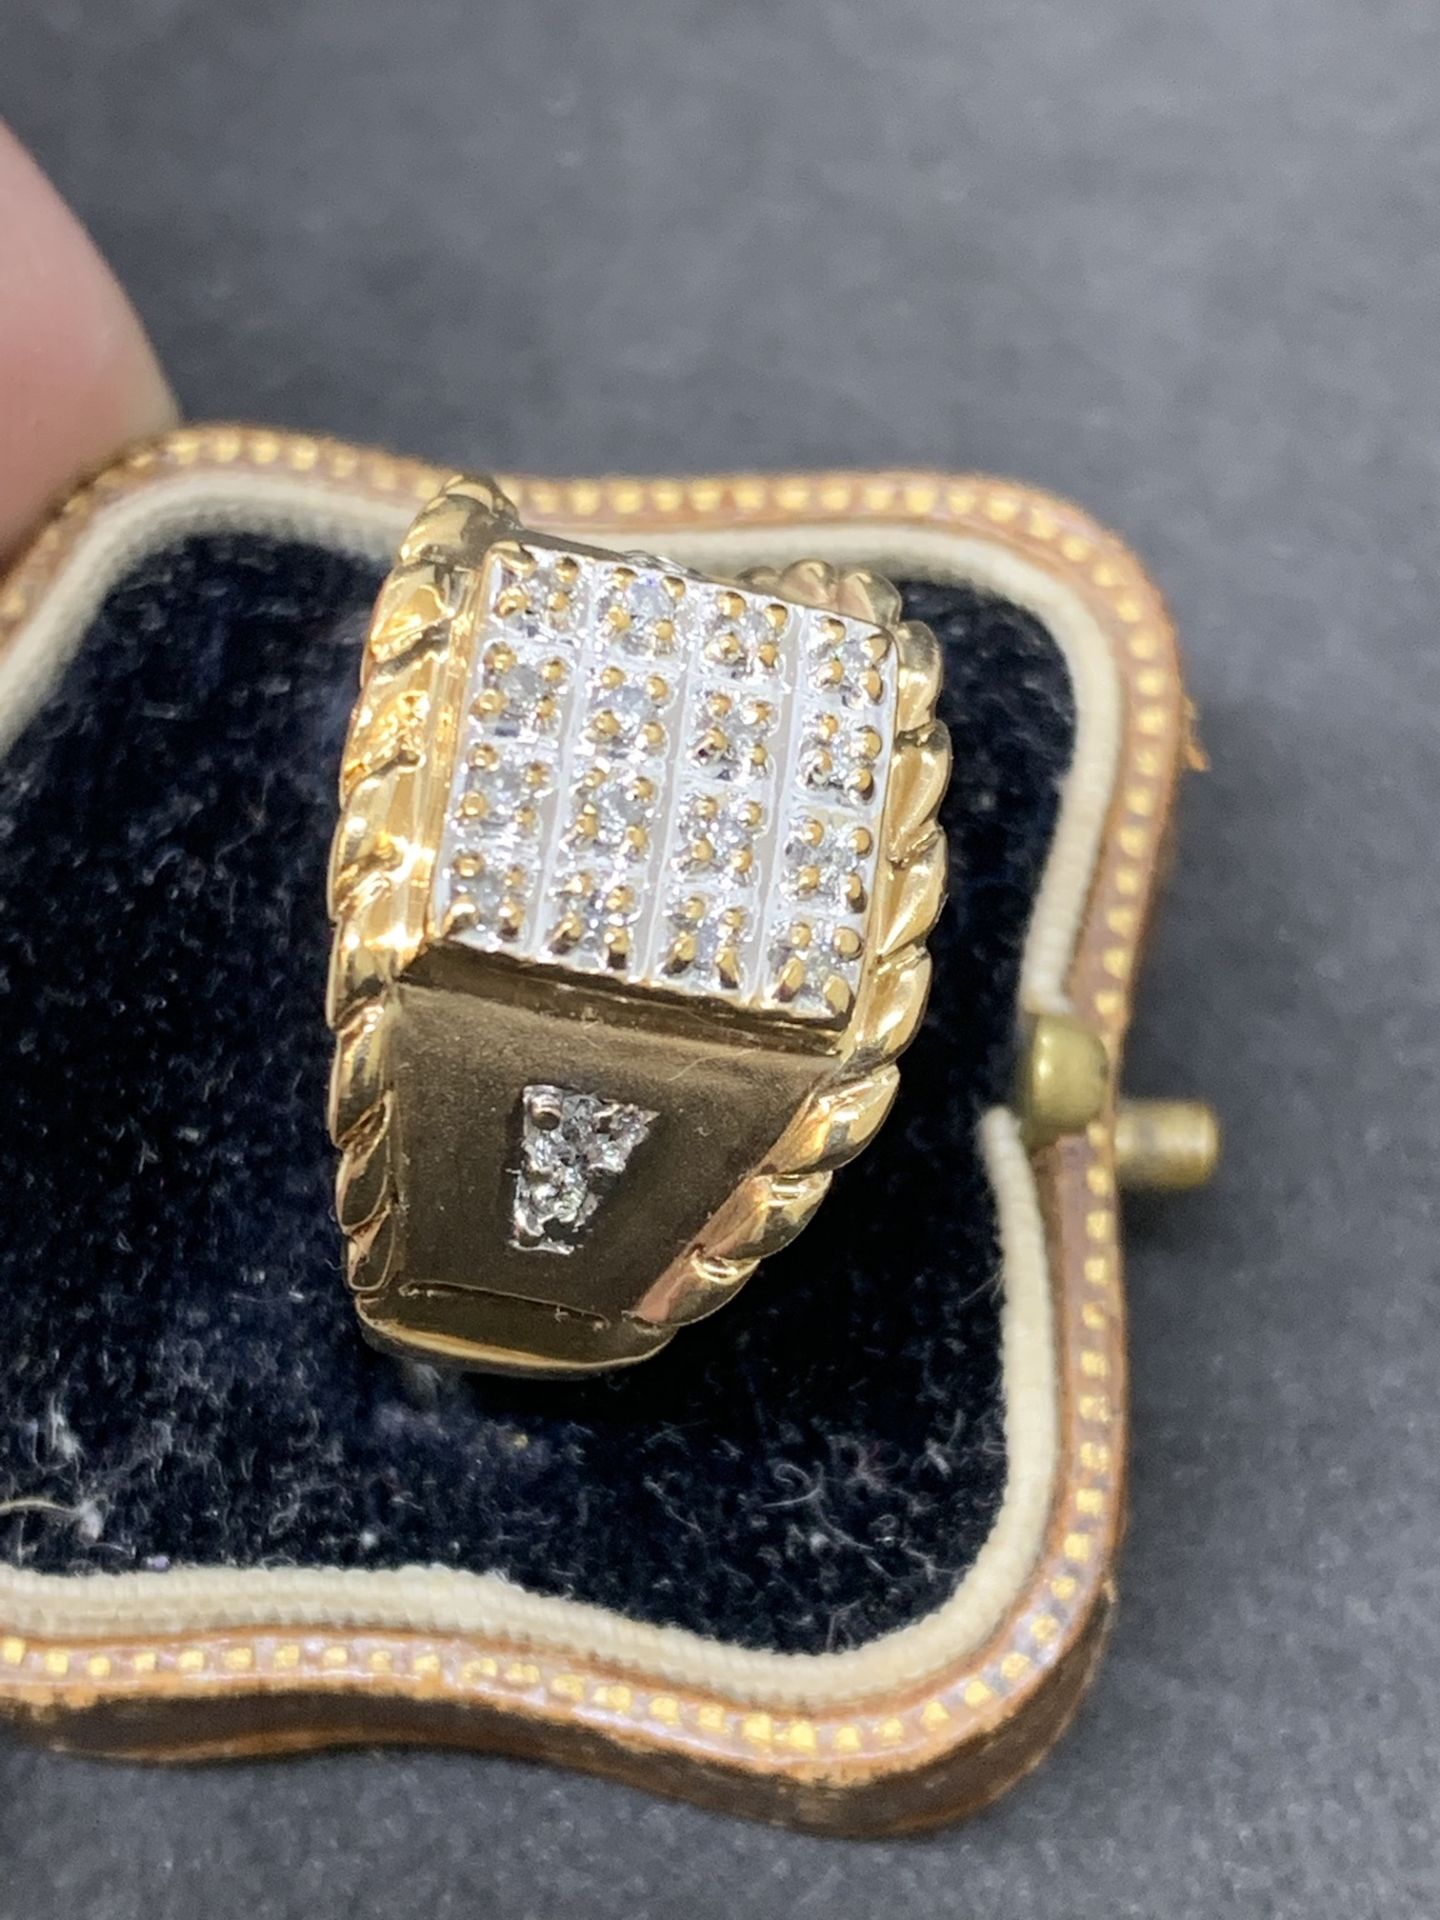 10ct gold diamond set Men's ring - Image 3 of 4